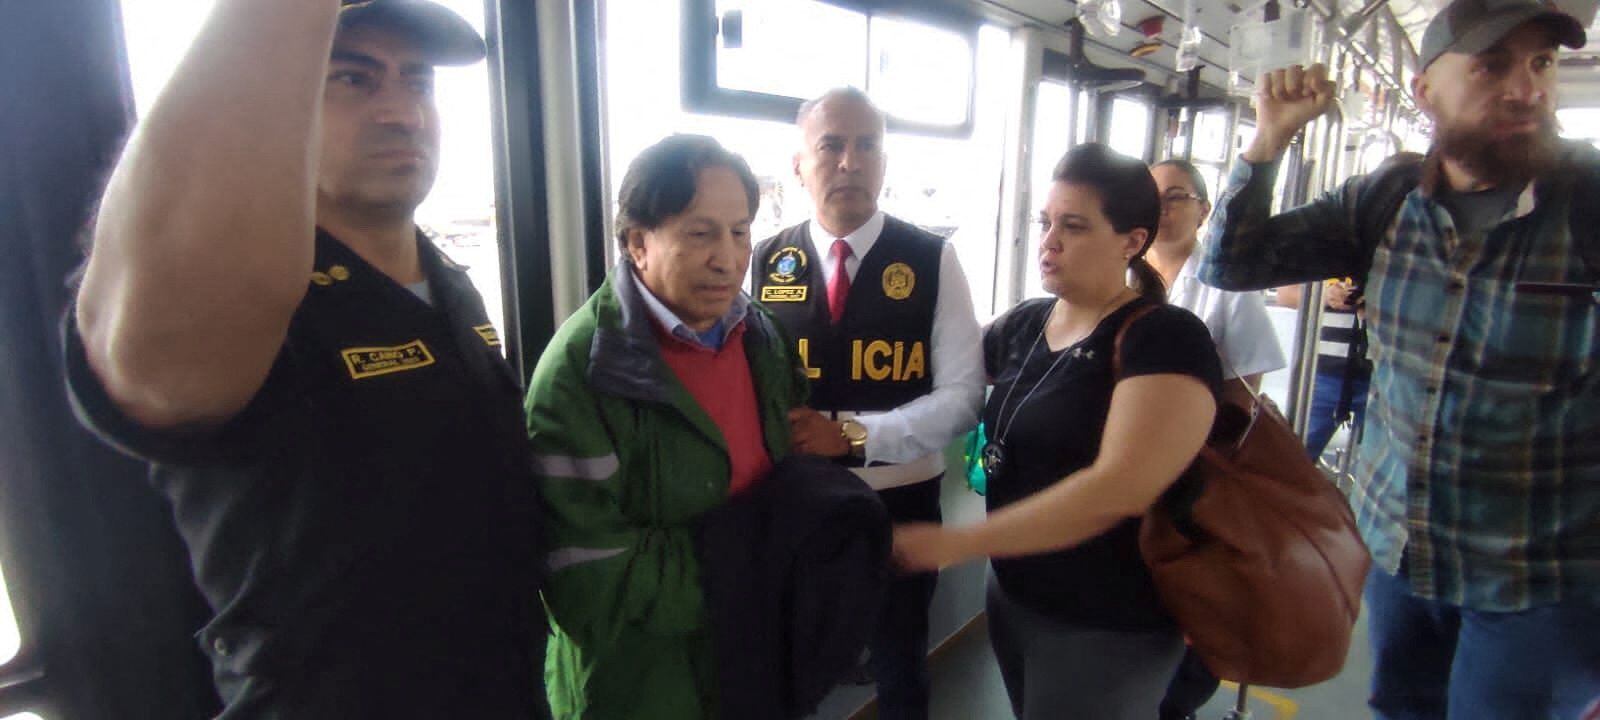 Toledo Manrique llegó acompañado de autoridades estadounidenses y peruanas. (REUTERS)